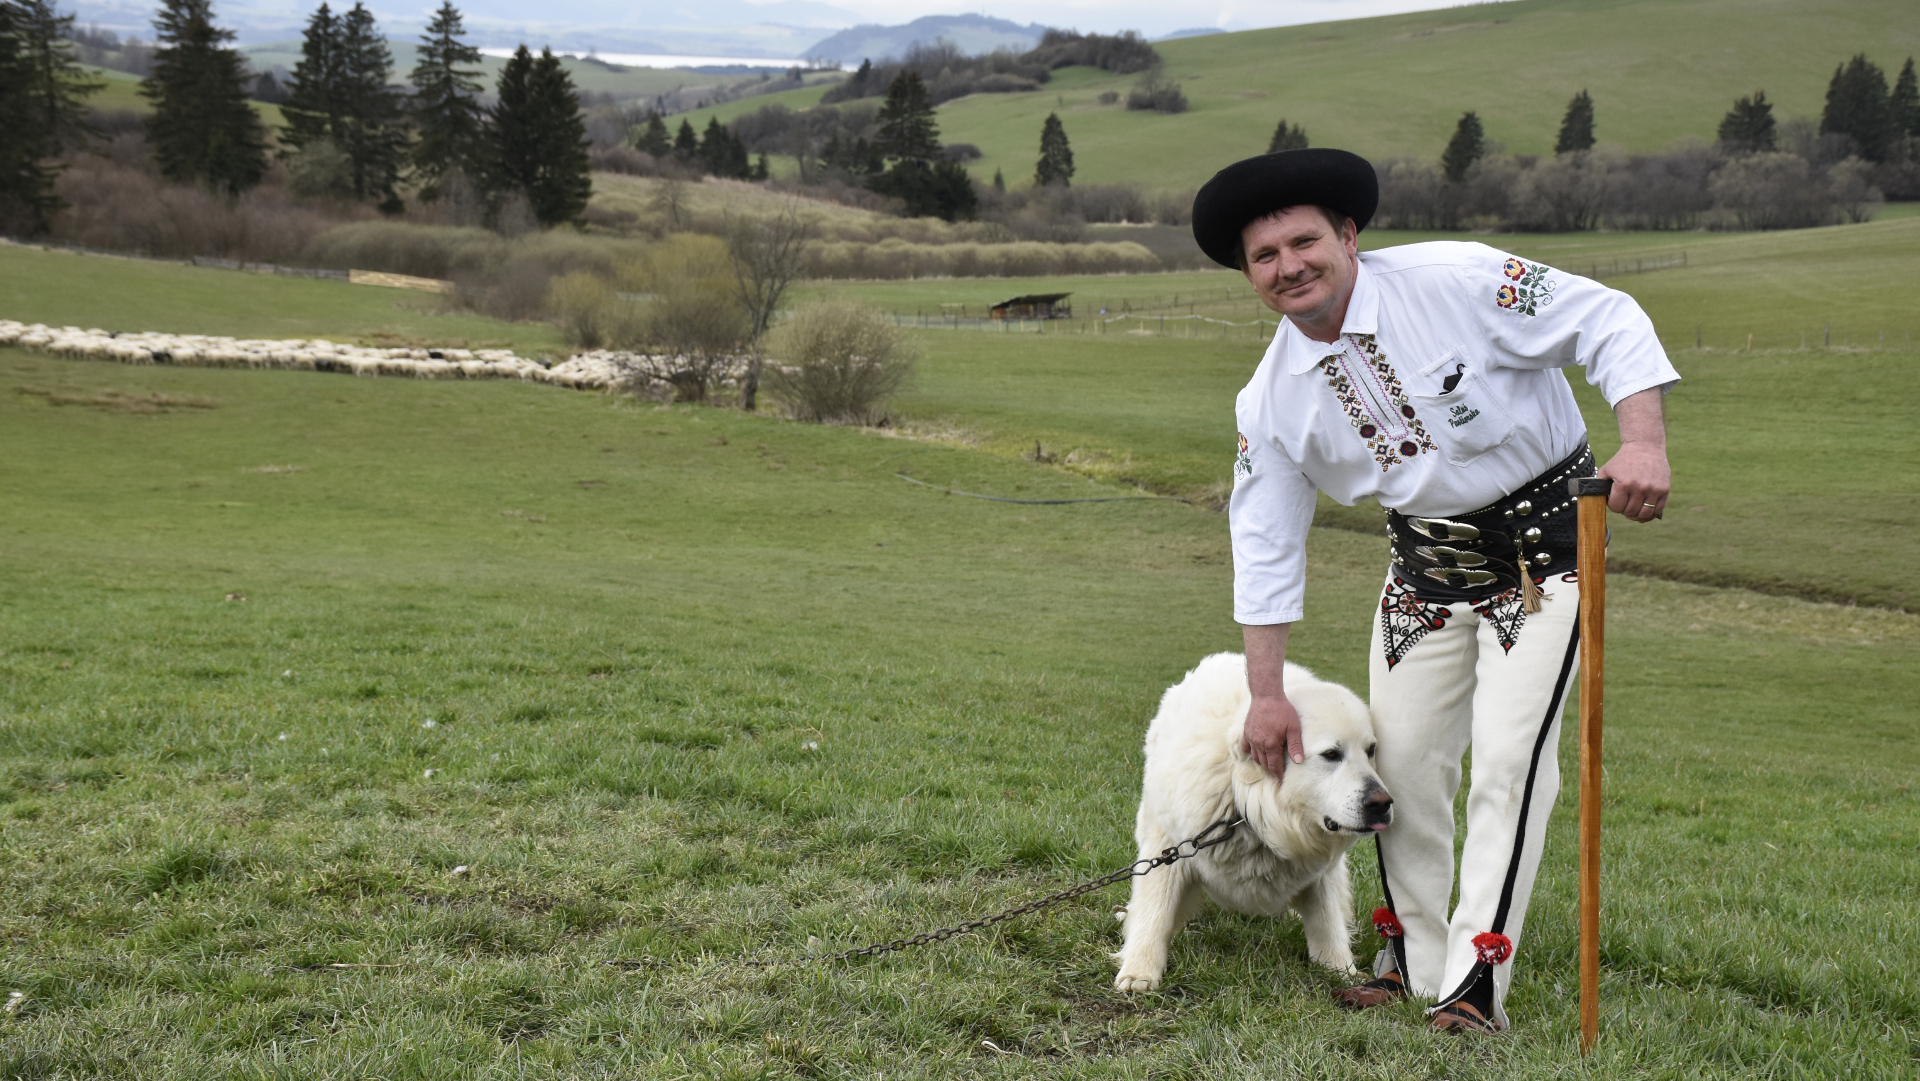 liptovský bača pózujúci so psom pred stádom oviec